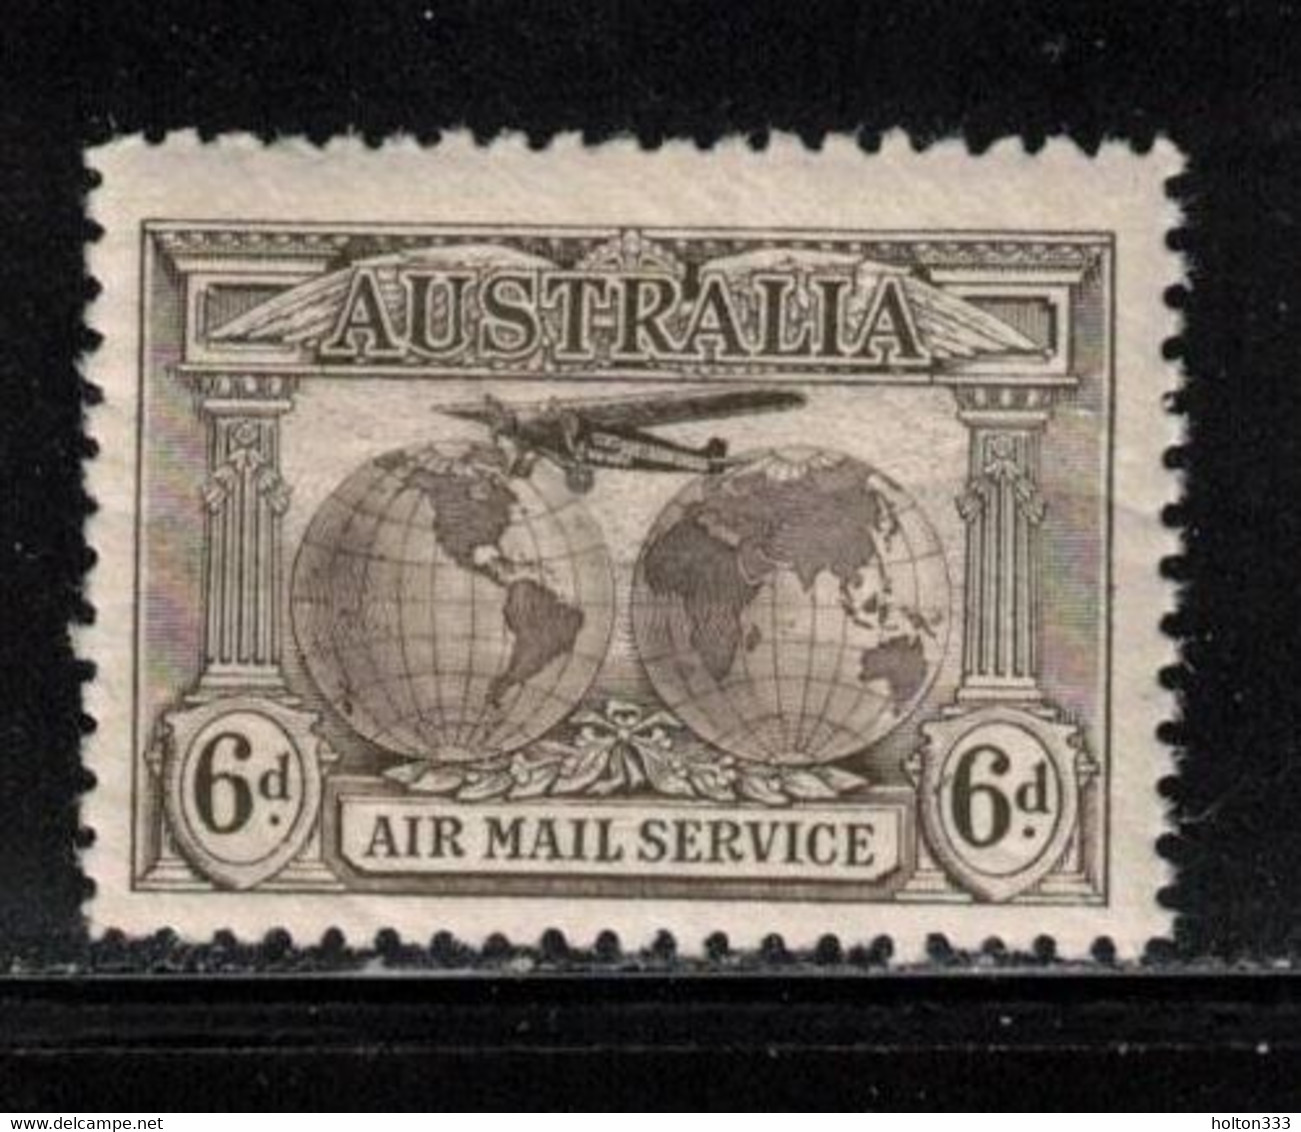 AUSTRALIA Scott # C3 MH - Plane Over Globe 1 - Mint Stamps